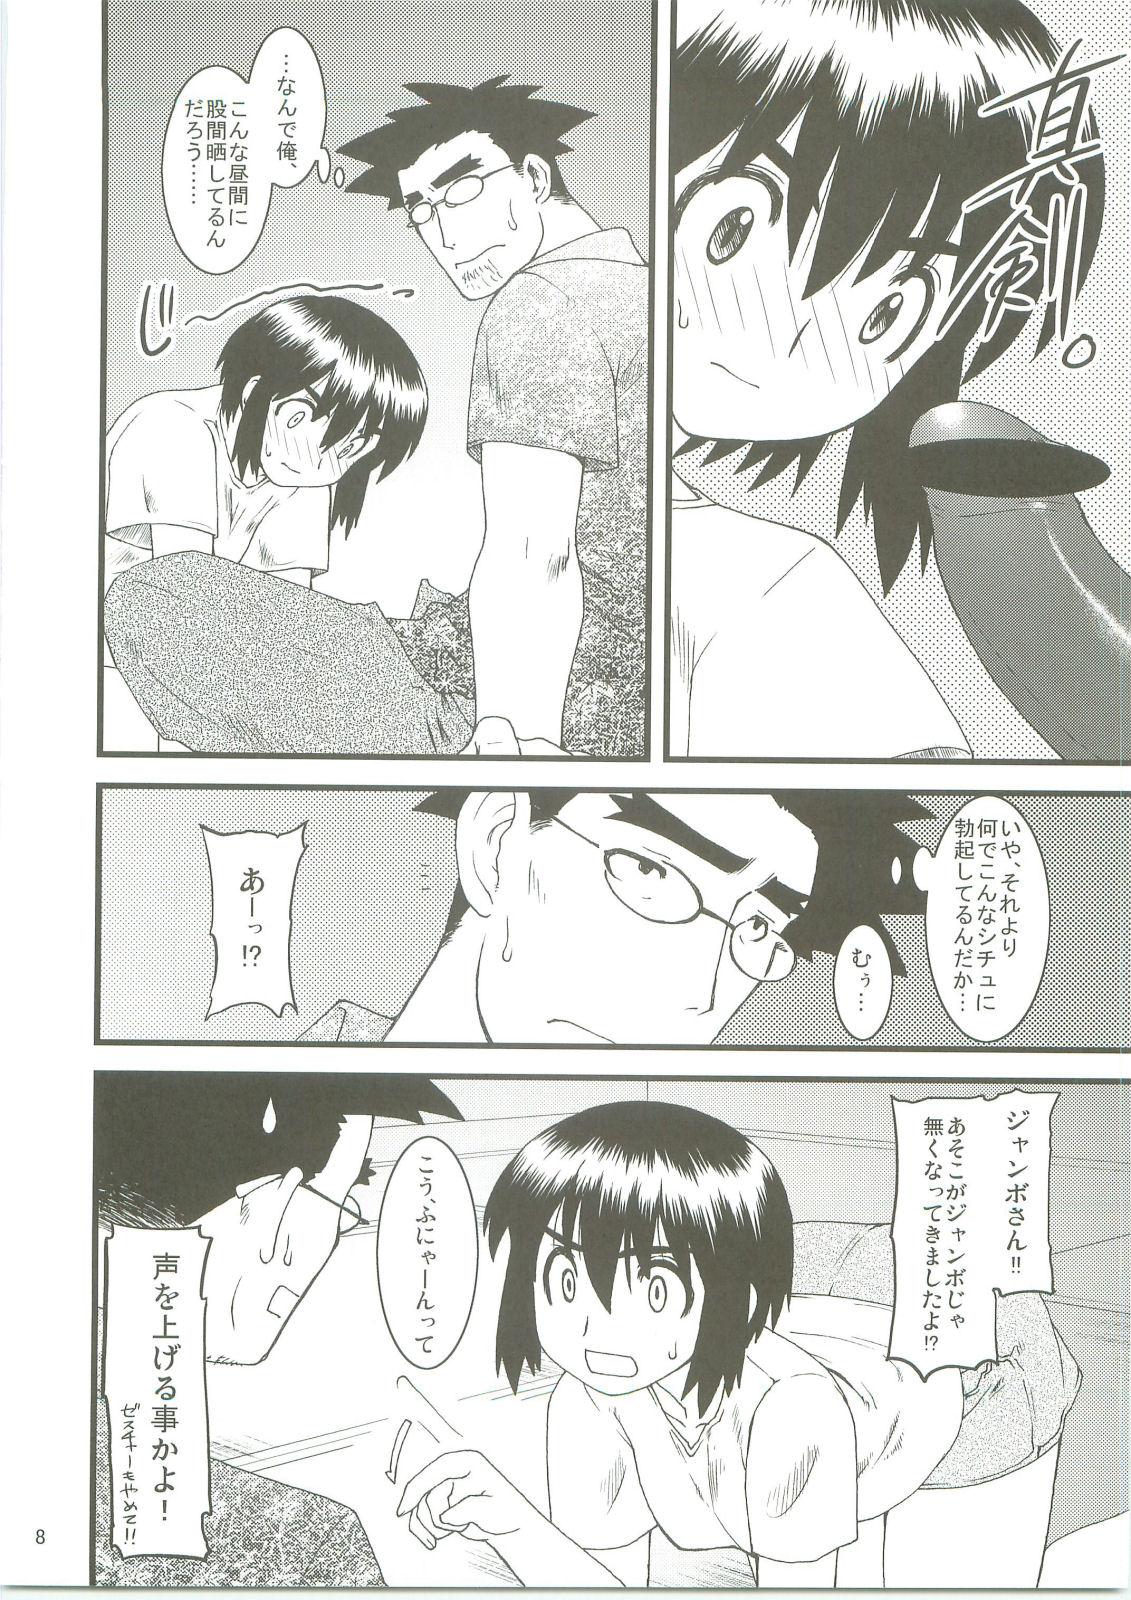 Creampies Fuukato! - Yotsubato Transex - Page 7